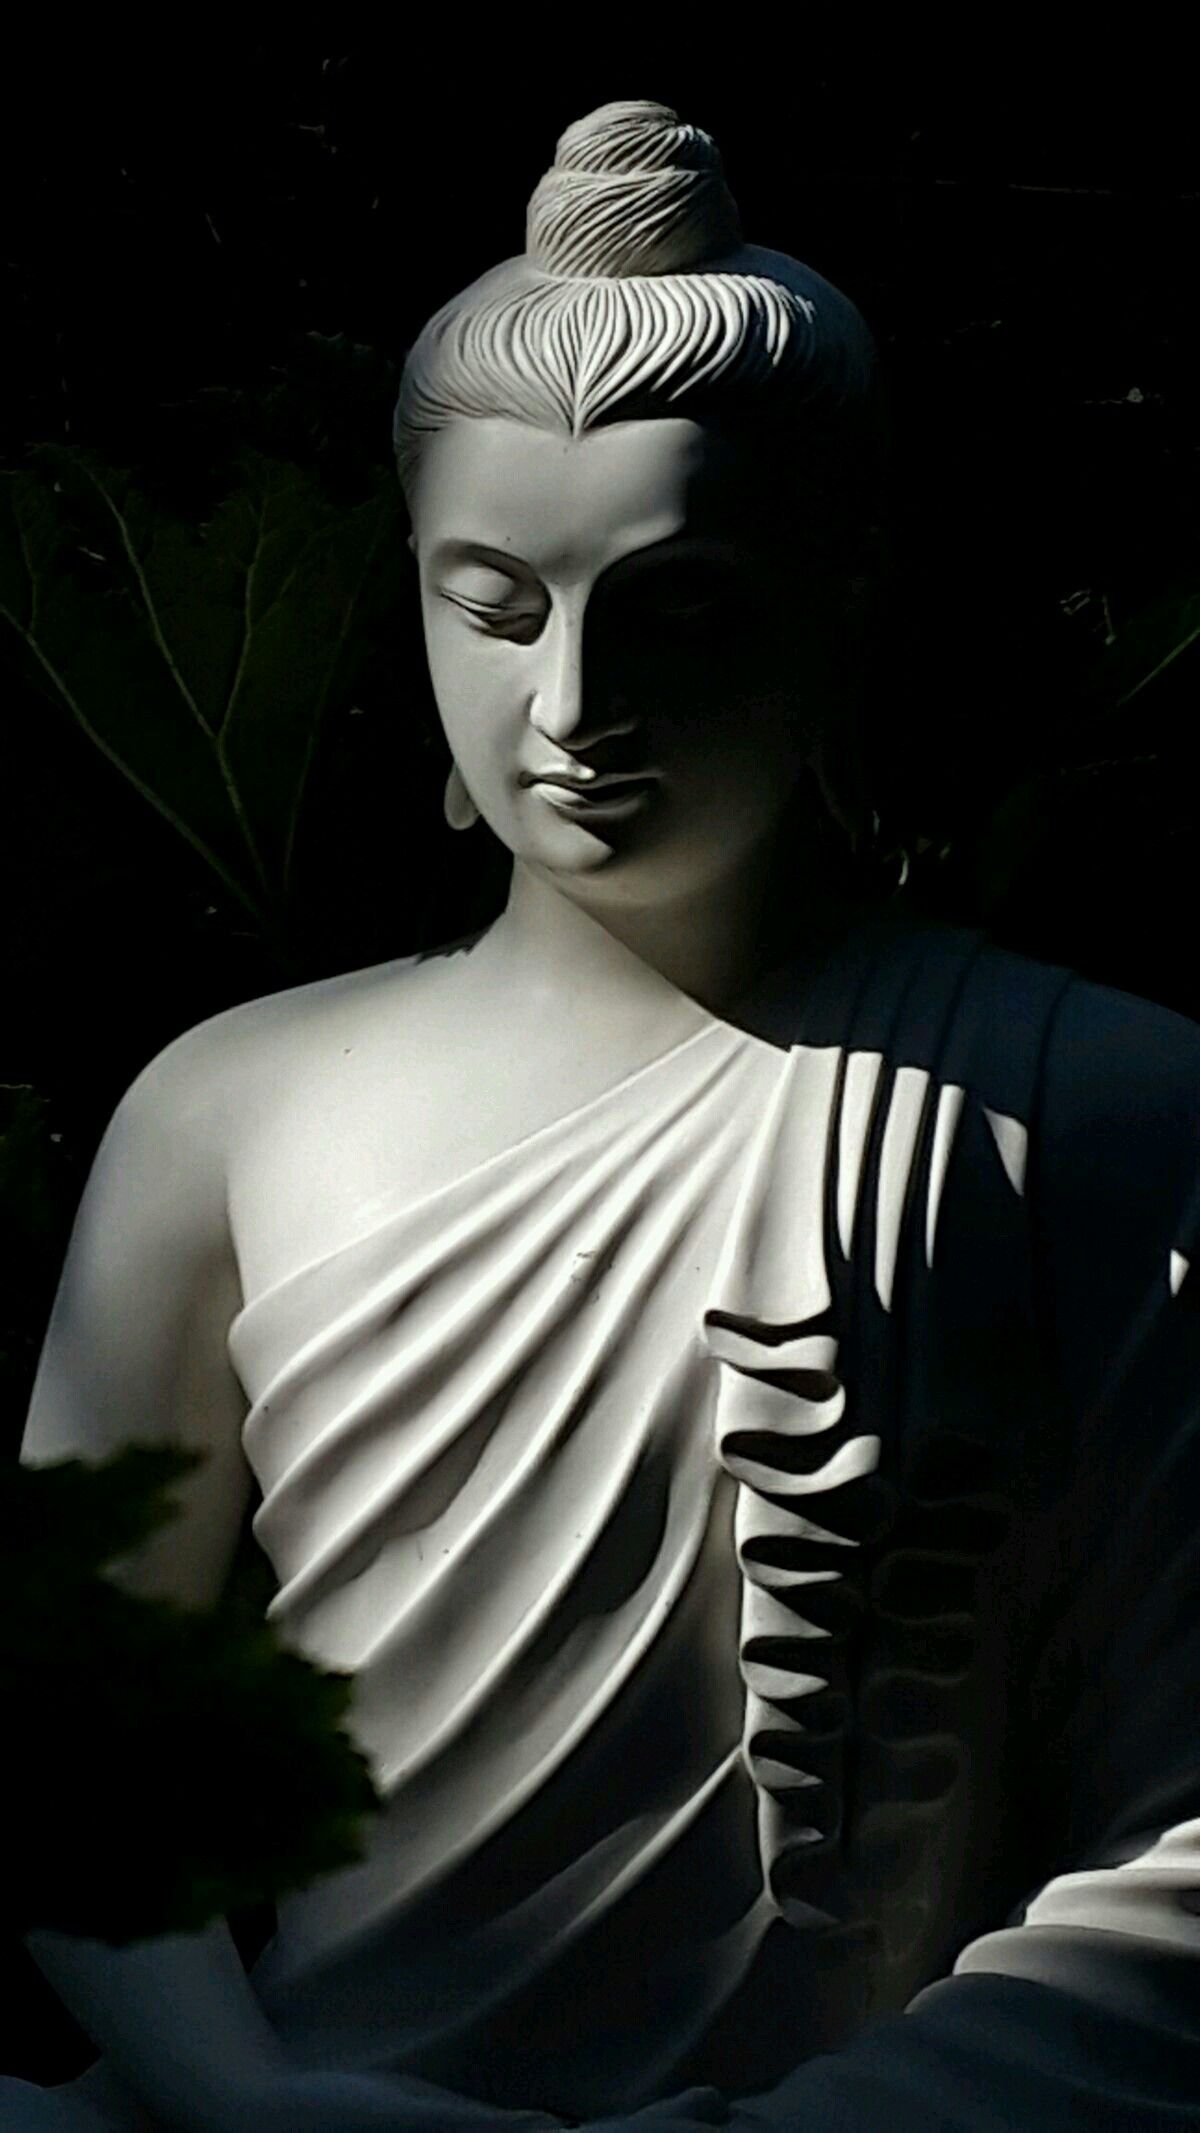 Hình ảnh Phật A Di Đà đẹp thanh thoát, trang nghiêm giữa không gian yên bình sẽ làm người xem như được đưa vào một không gian tâm linh và tìm thấy sự bình an trong cuộc sống.